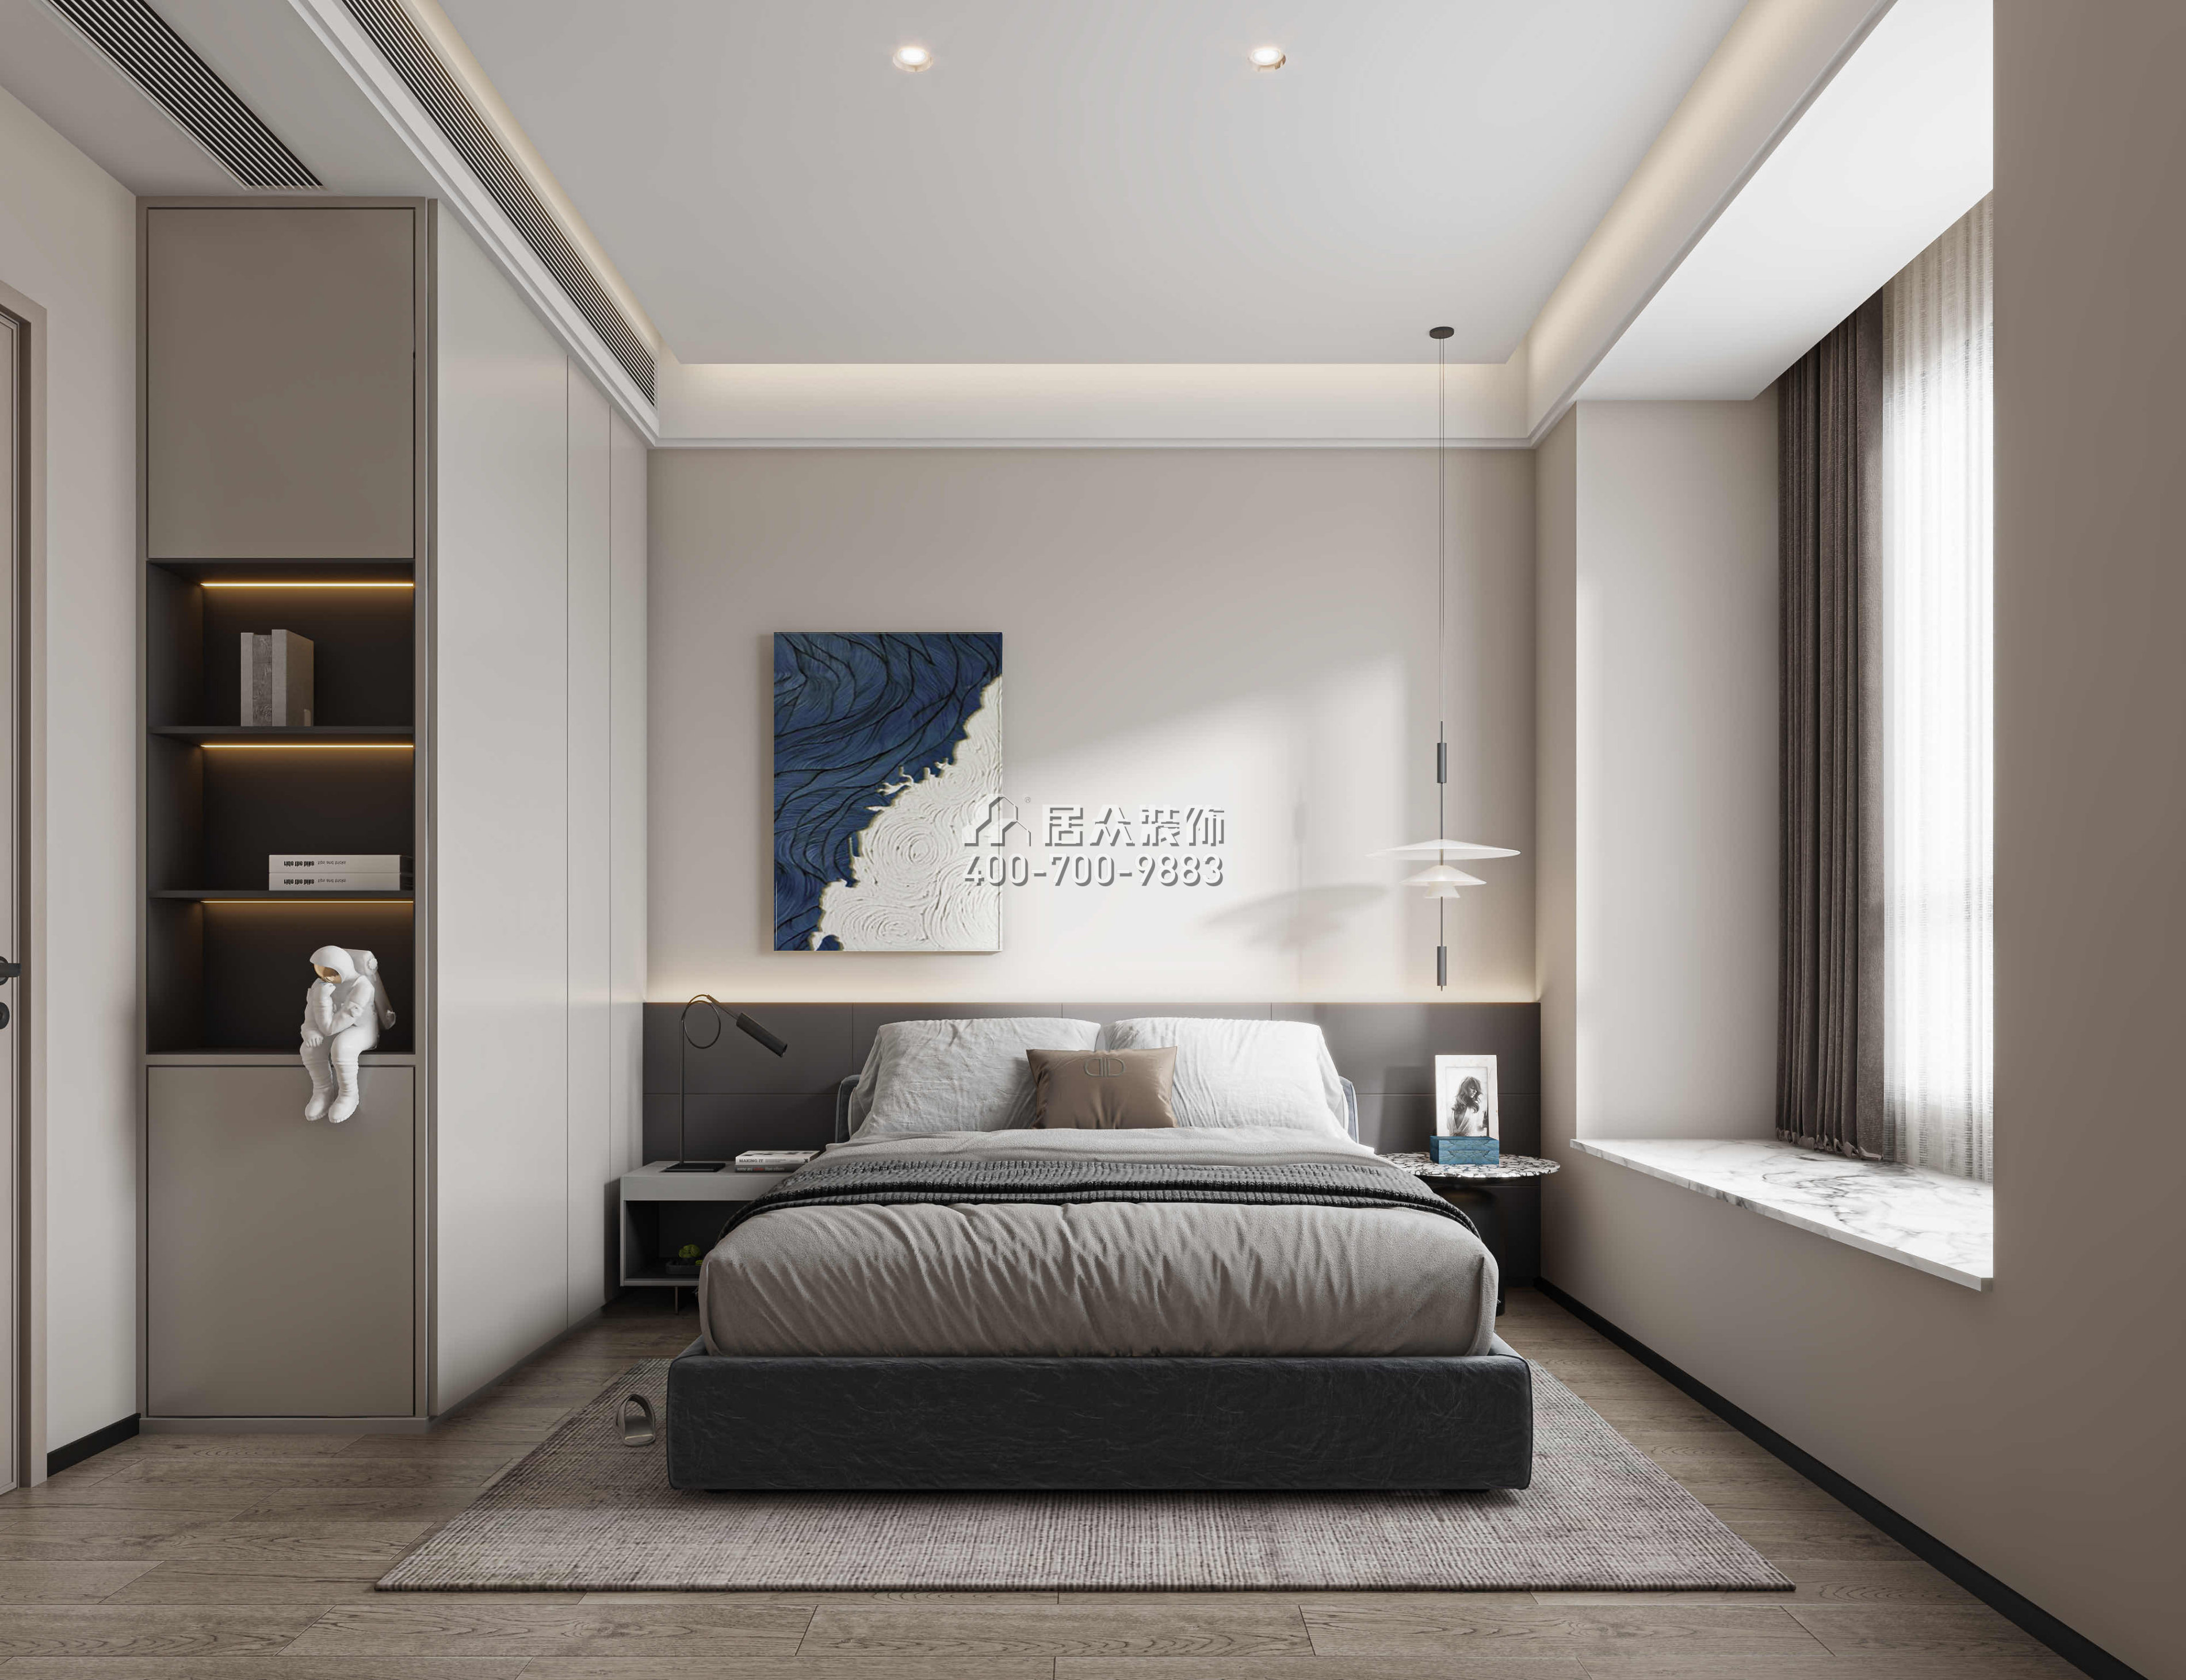 華發四季峰景140平方米現代簡約風格平層戶型臥室裝修效果圖